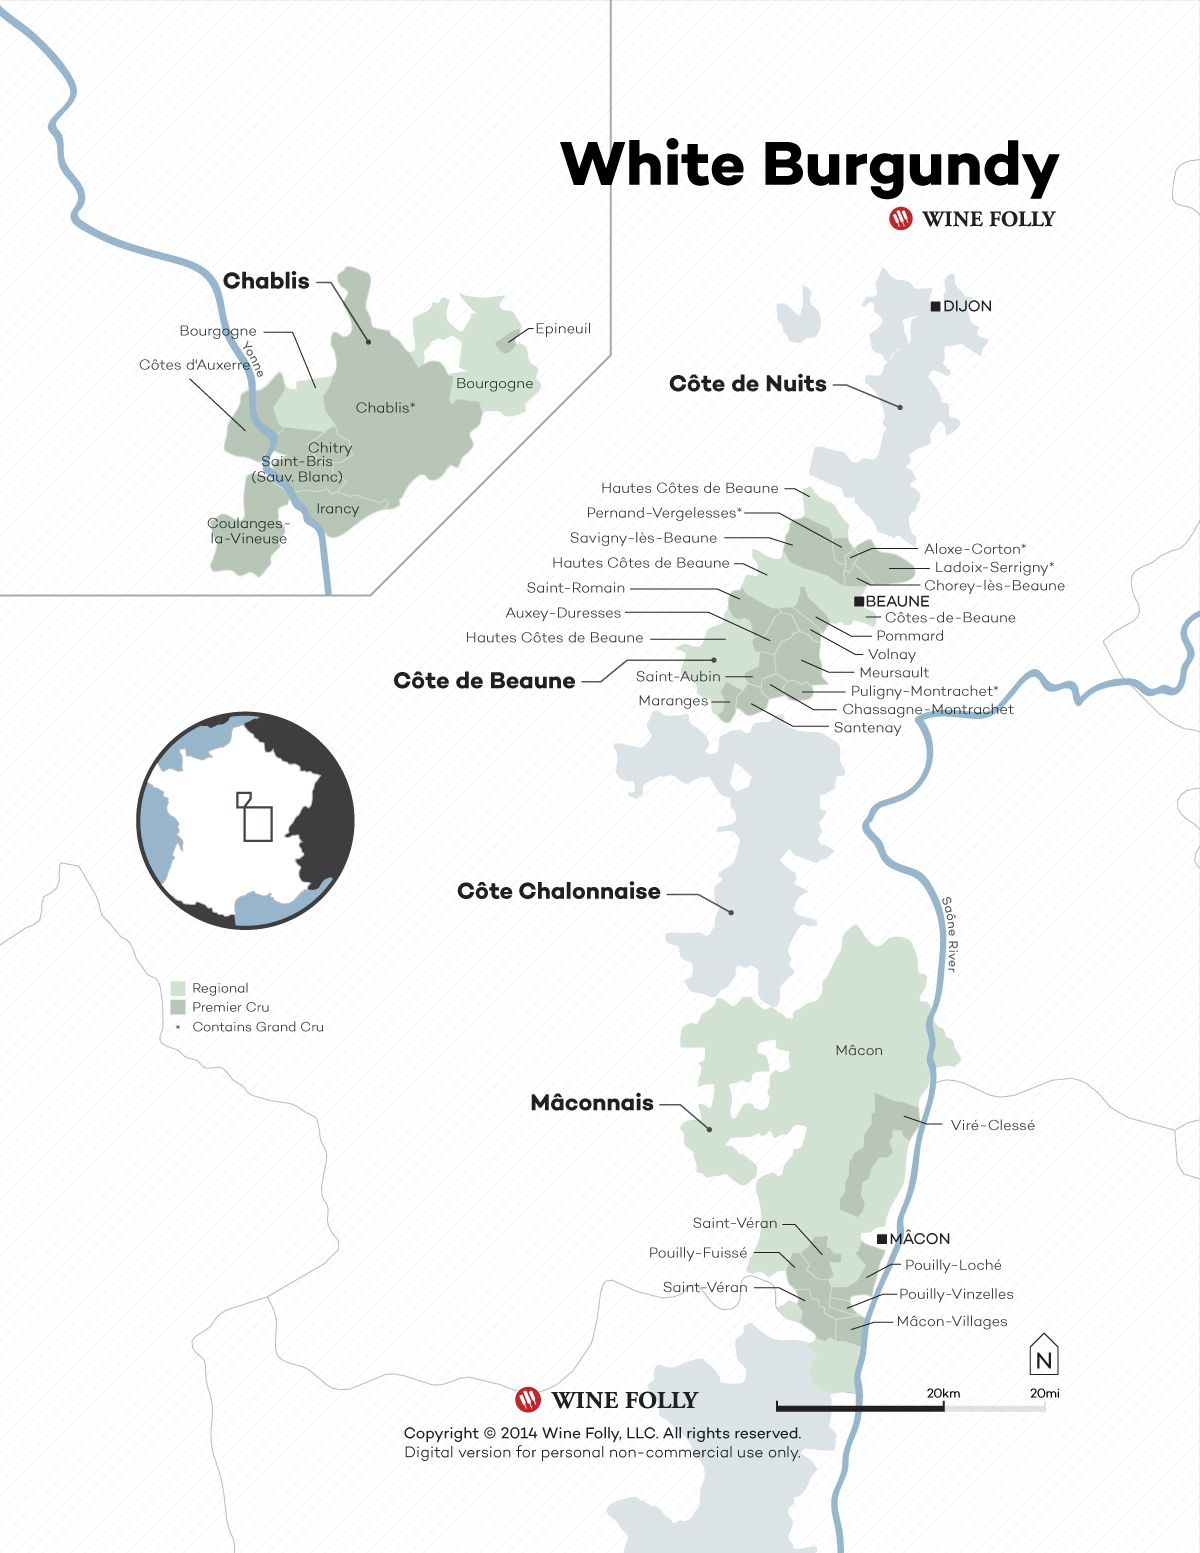 वाइन फॉली 2015 द्वारा फ्रांस व्हाइट बरगंडी वाइन मैप